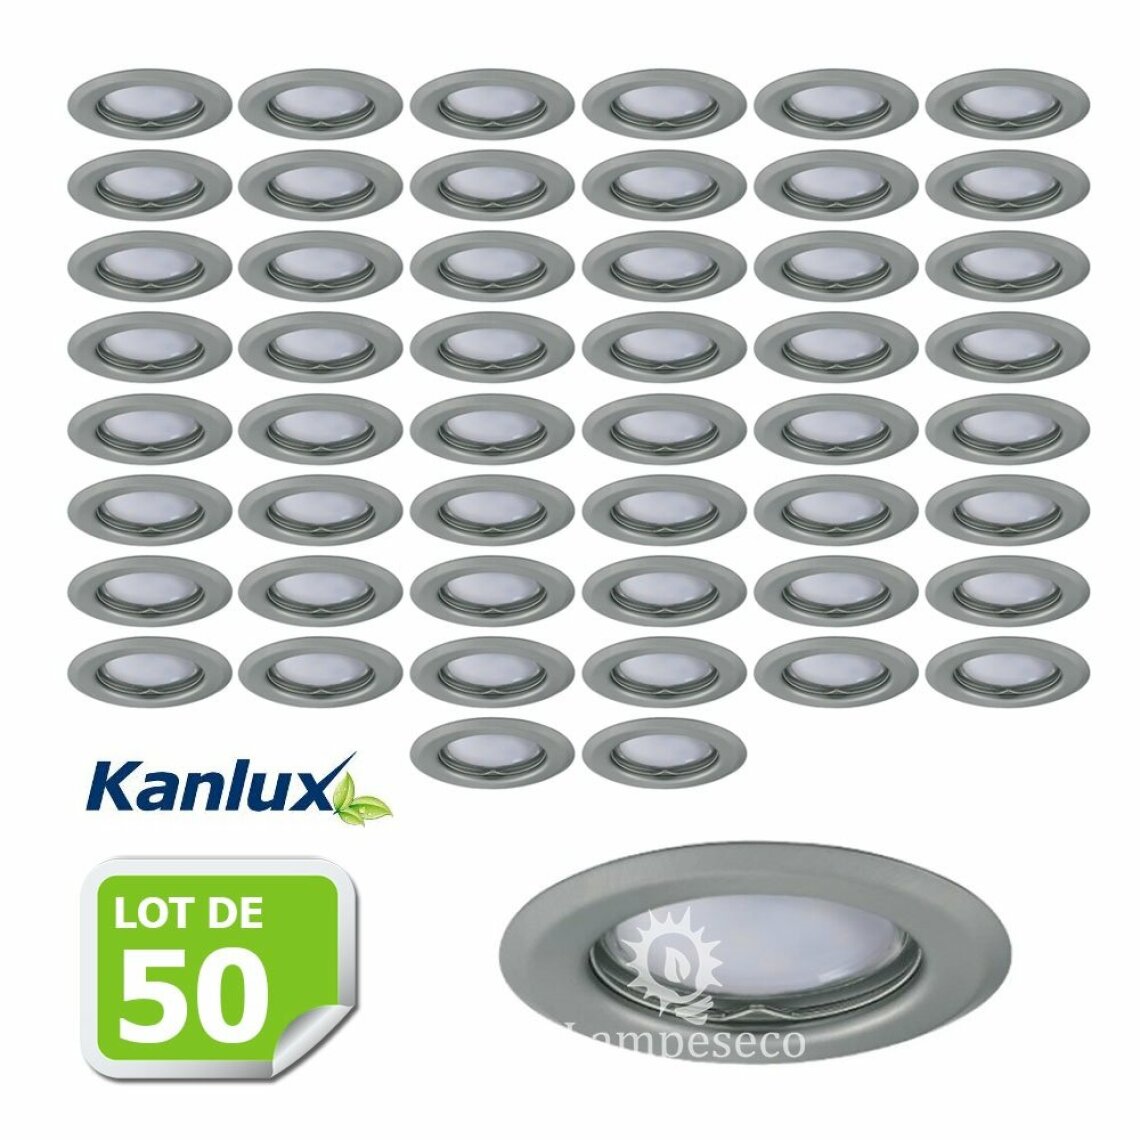 Kanlux - Lot de 50 Fixation de spot encastrable chrome matt D83mm marque Kanlux ref 26793 - Boîtes d'encastrement